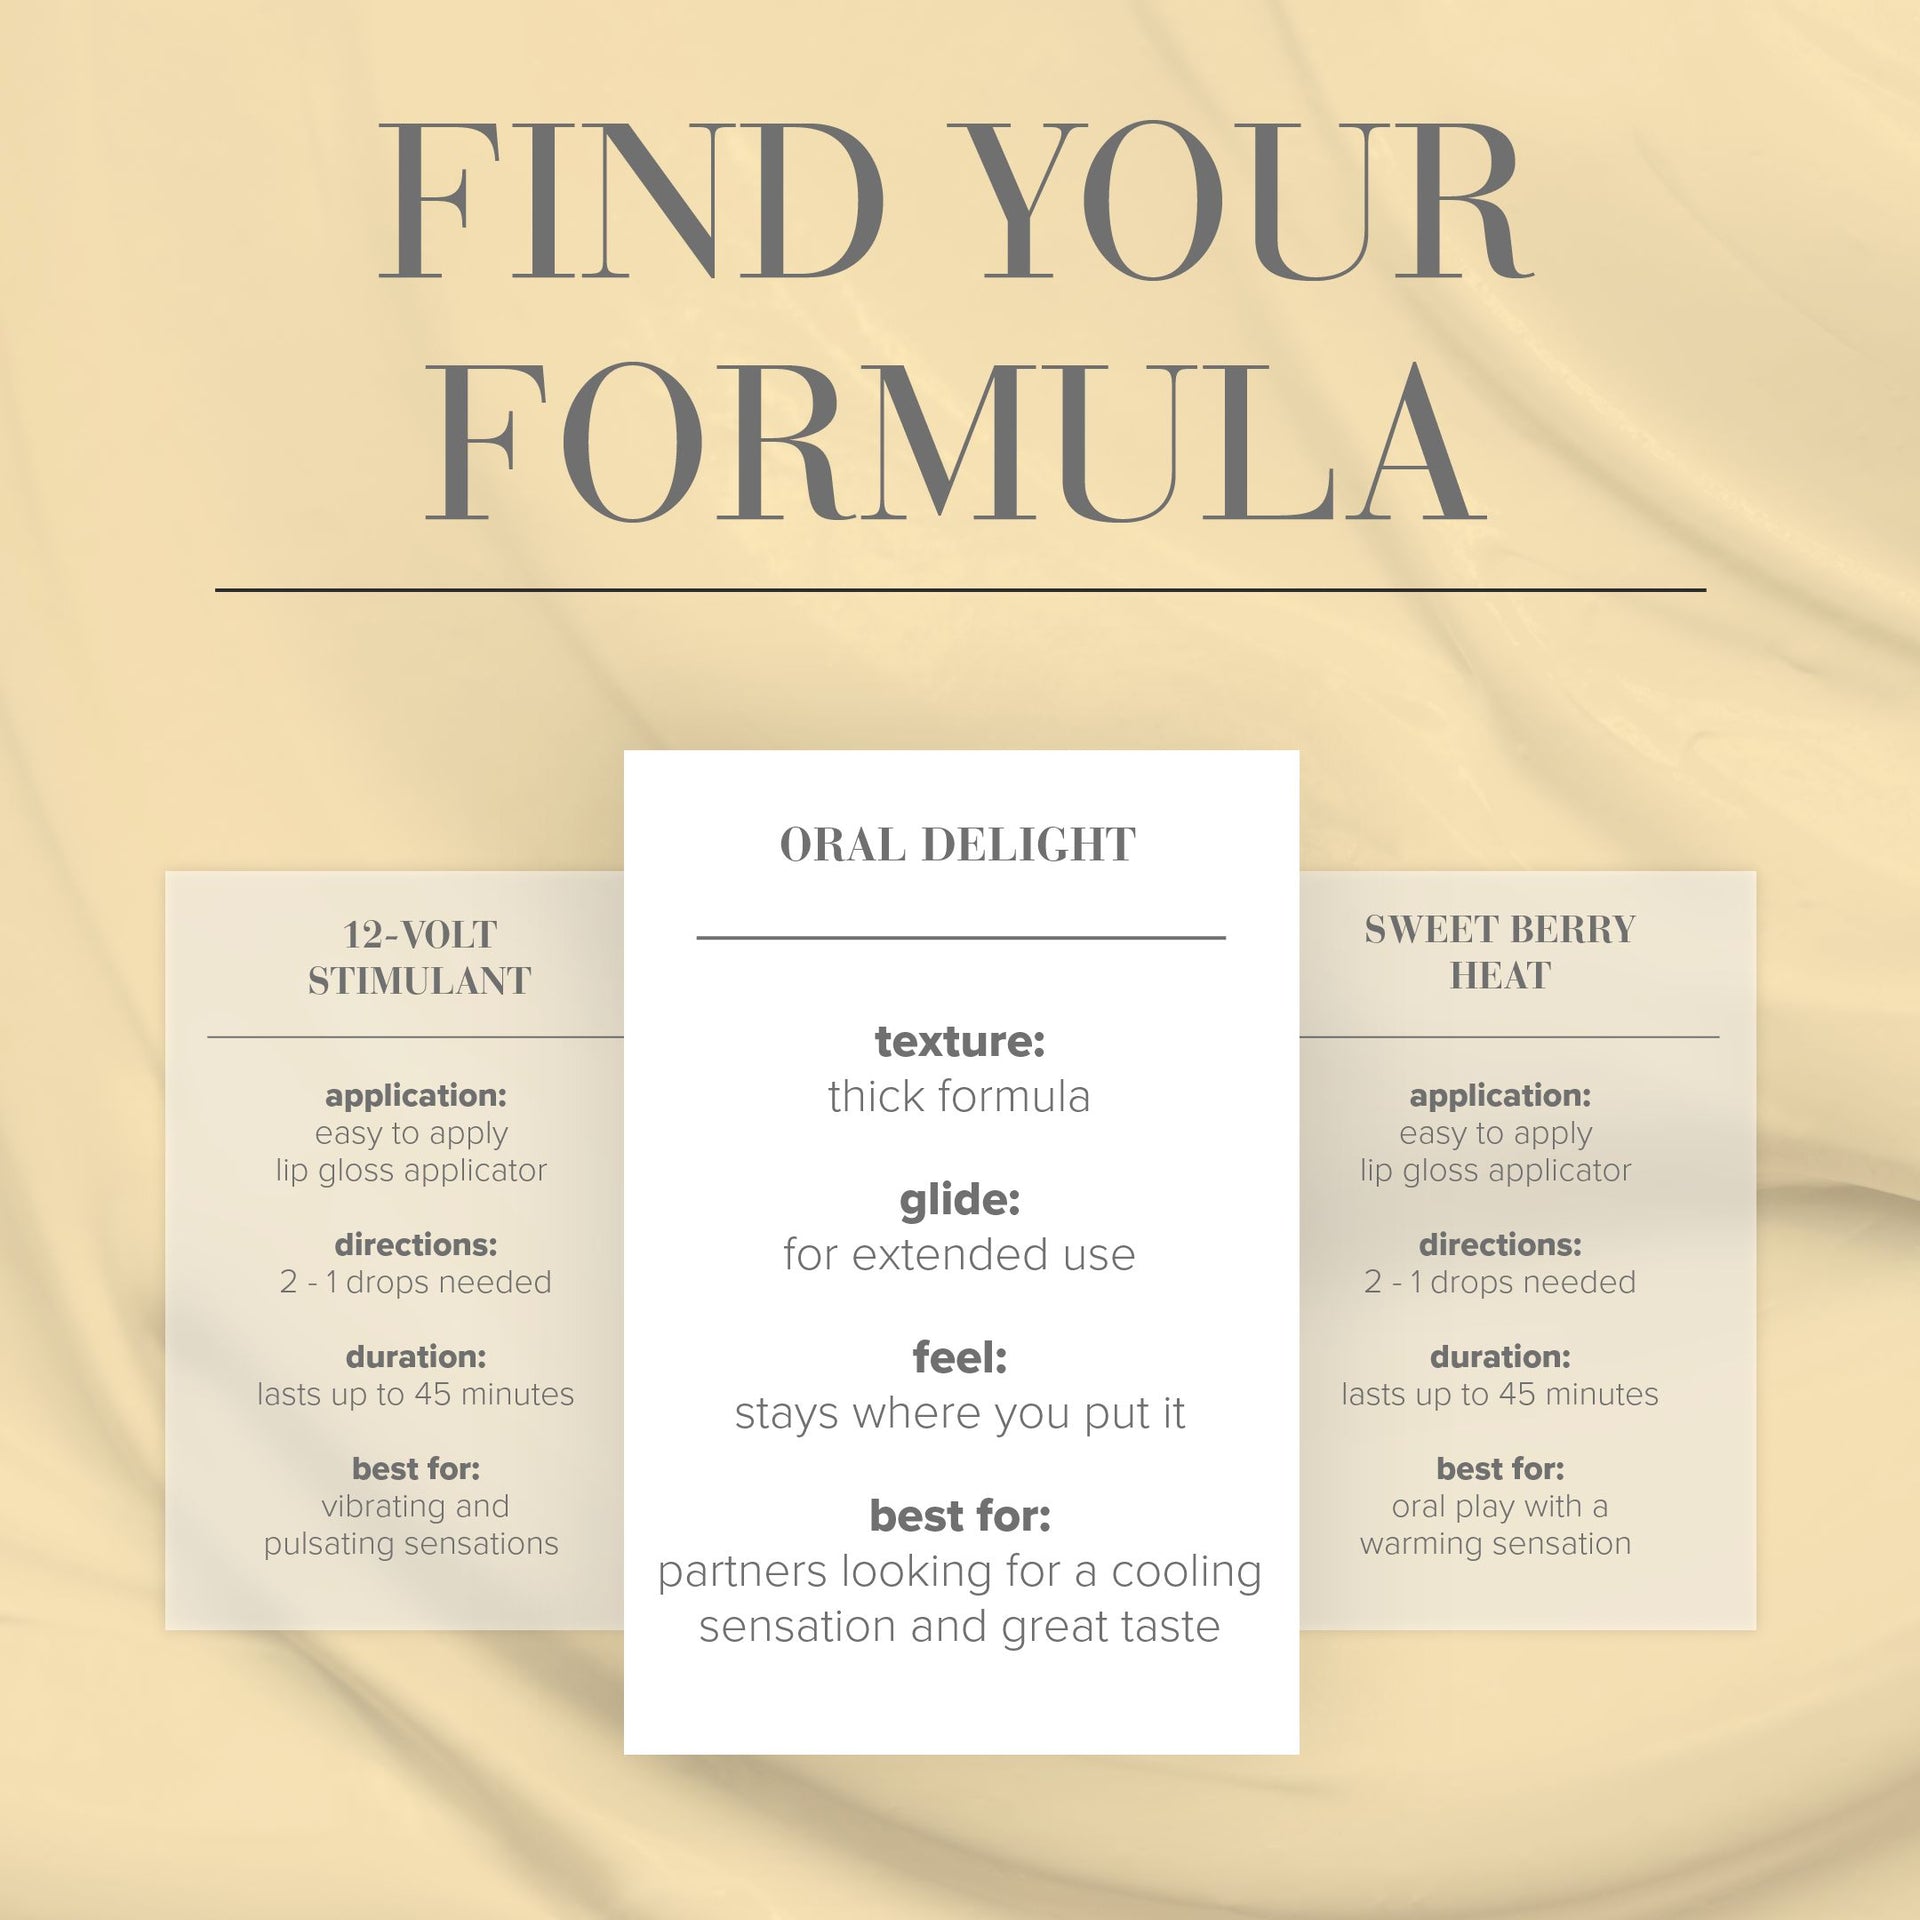 oral delight vanilla formula